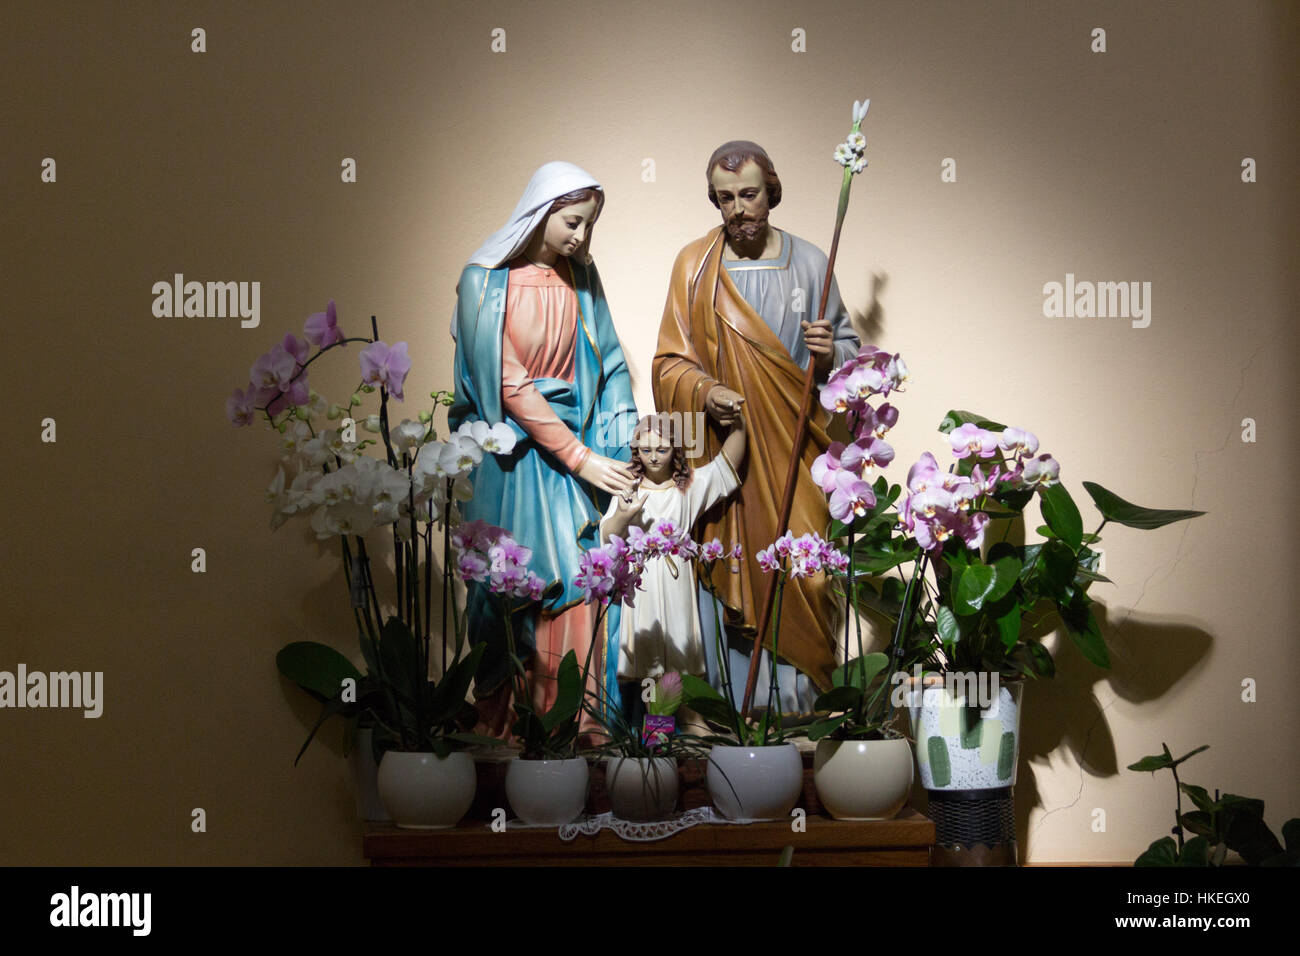 MEDJUGORJE, BOSNIE ET HERZÉGOVINE, le 21 août 2016. La statue de la sainte famille - Jésus, Marie et Joseph entouré d'orchidées blanches et roses. Banque D'Images